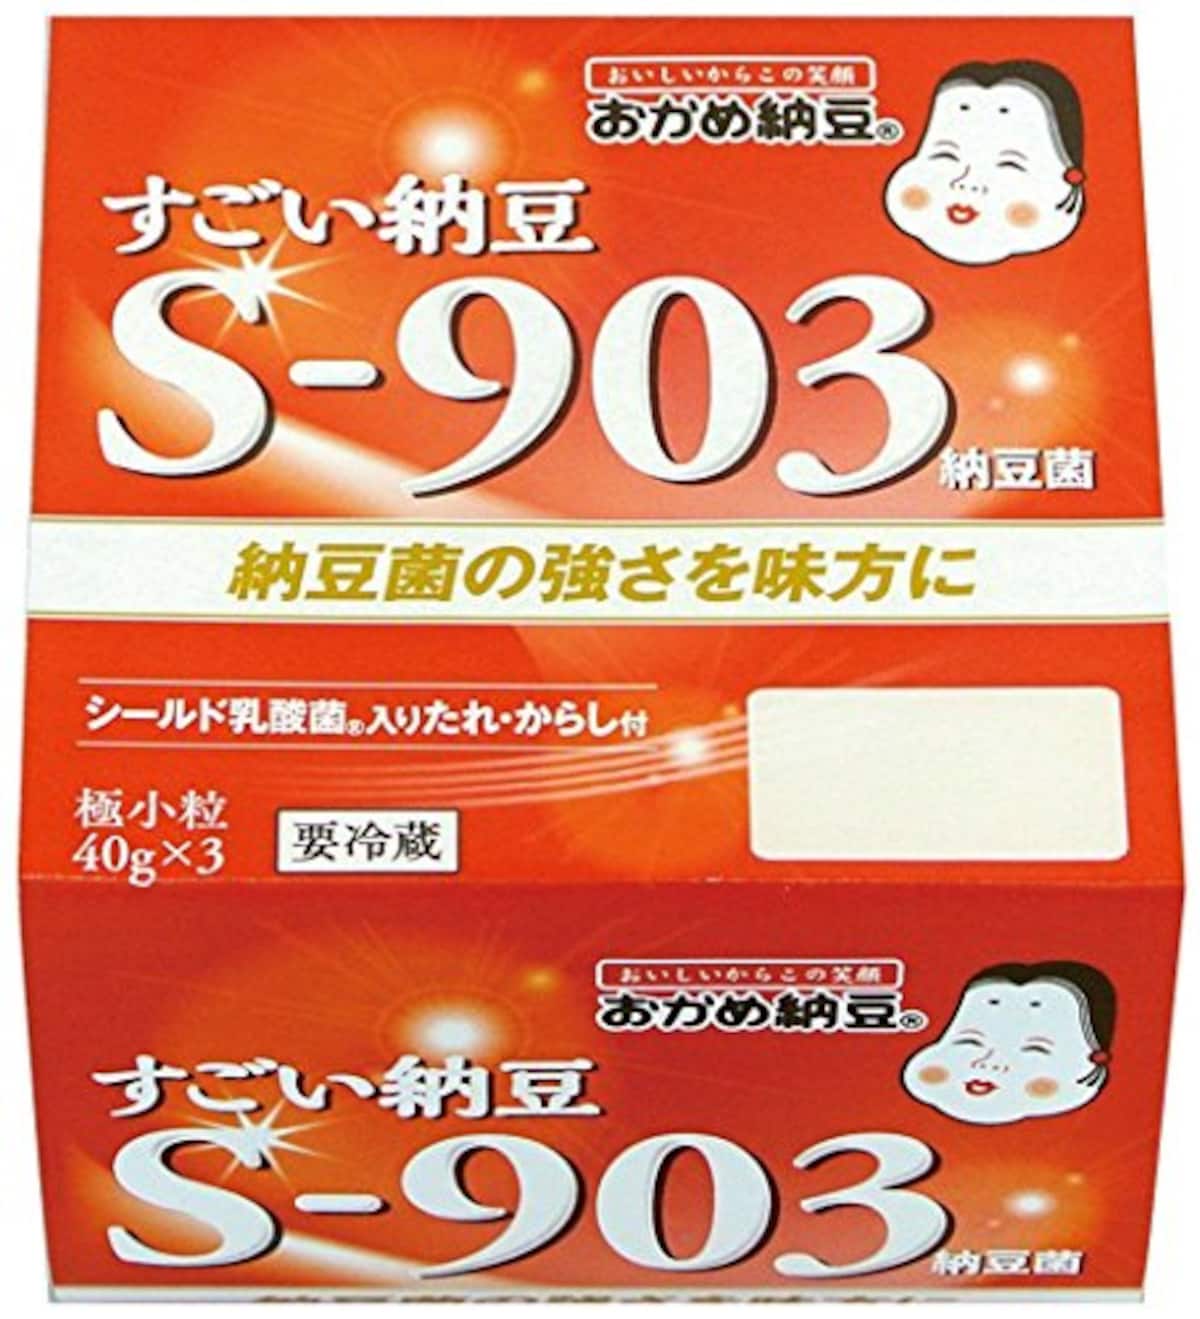 おかめ納豆 すごい納豆S-903